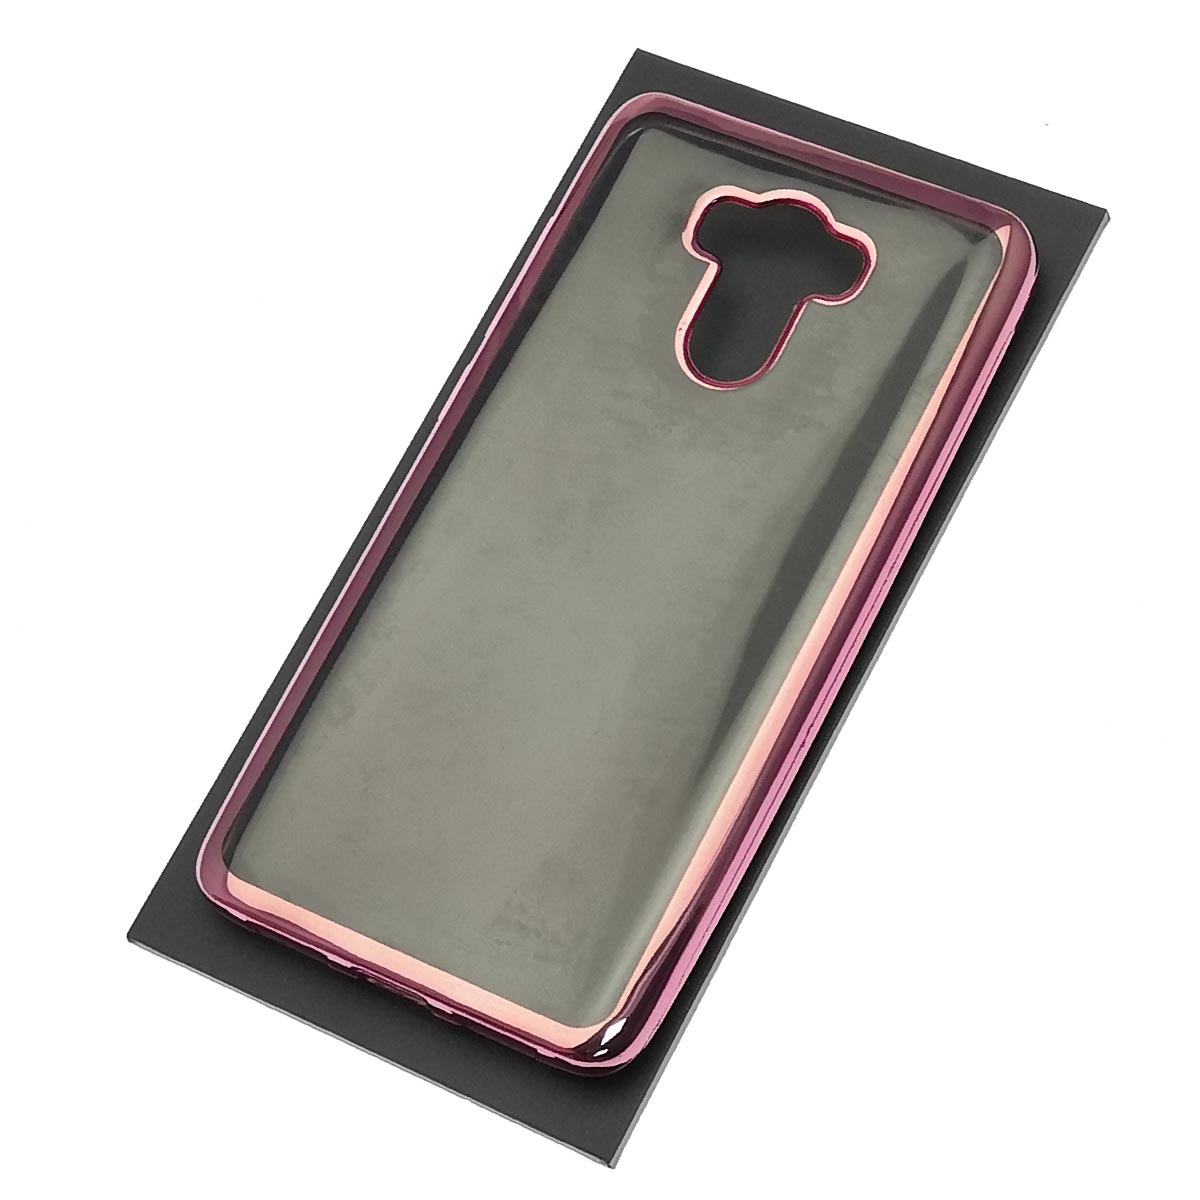 Чехол накладка для XIAOMI Redmi 4, Redmi 4 Pro, силикон, цвет окантовки розовый.